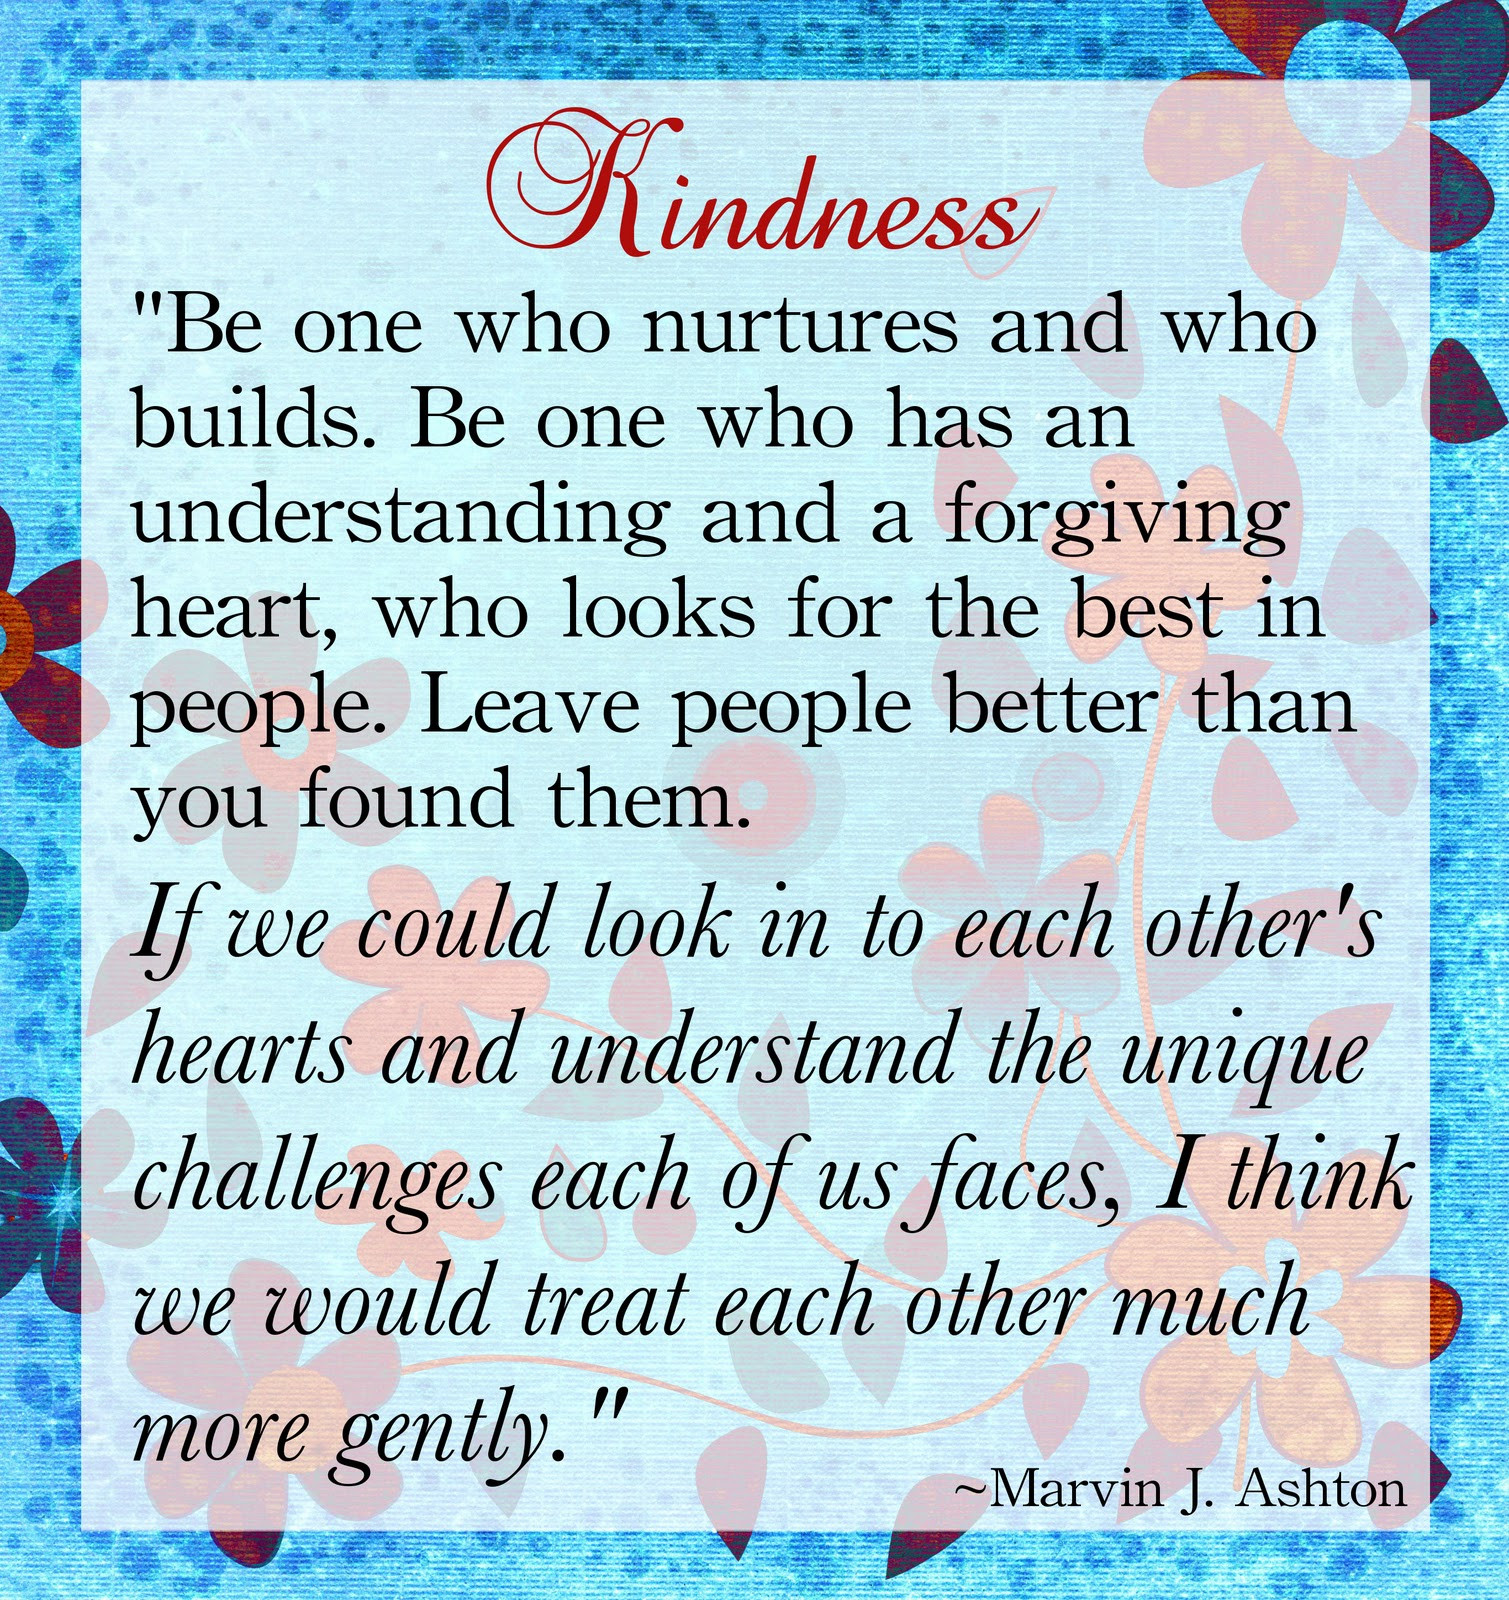 Lds Quotes On Kindness
 Lds Quotes Kindness QuotesGram